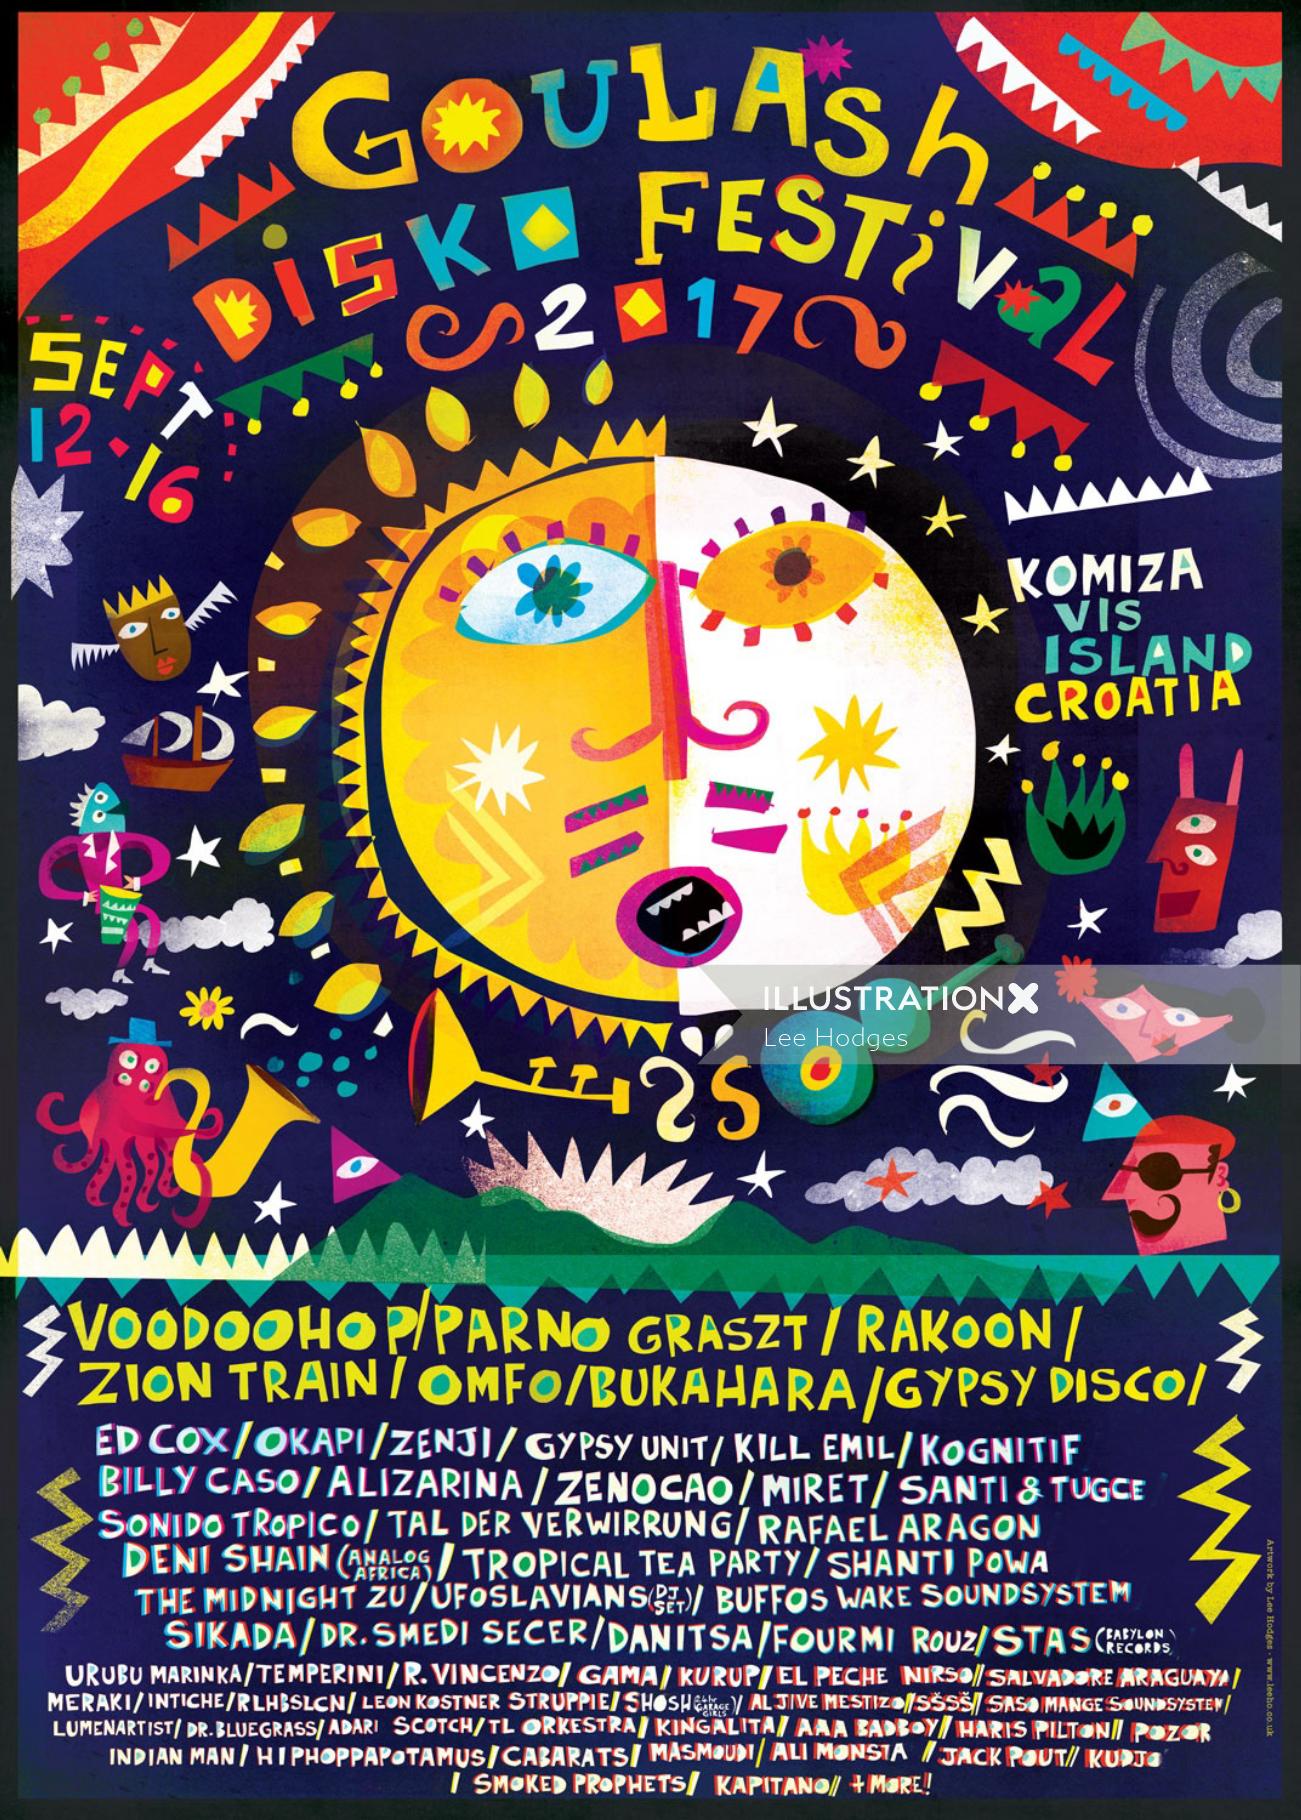 Goulash Disko Festival music cover illustration